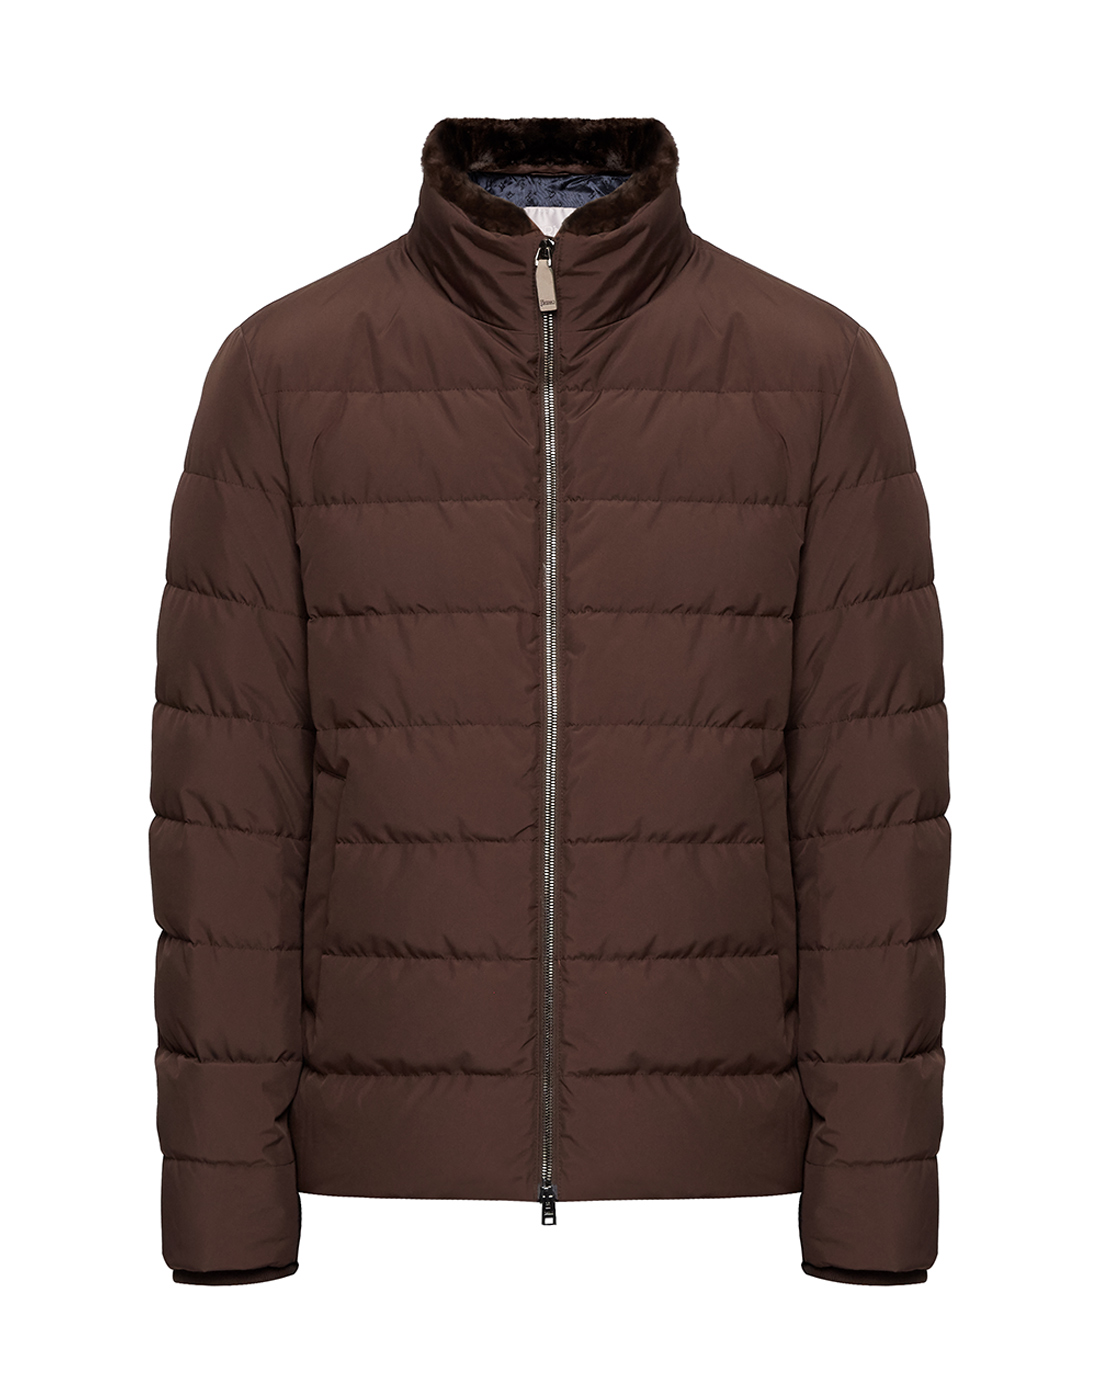 Мужская коричневая куртка Herno SPI050UR - 12015 - 8940-1